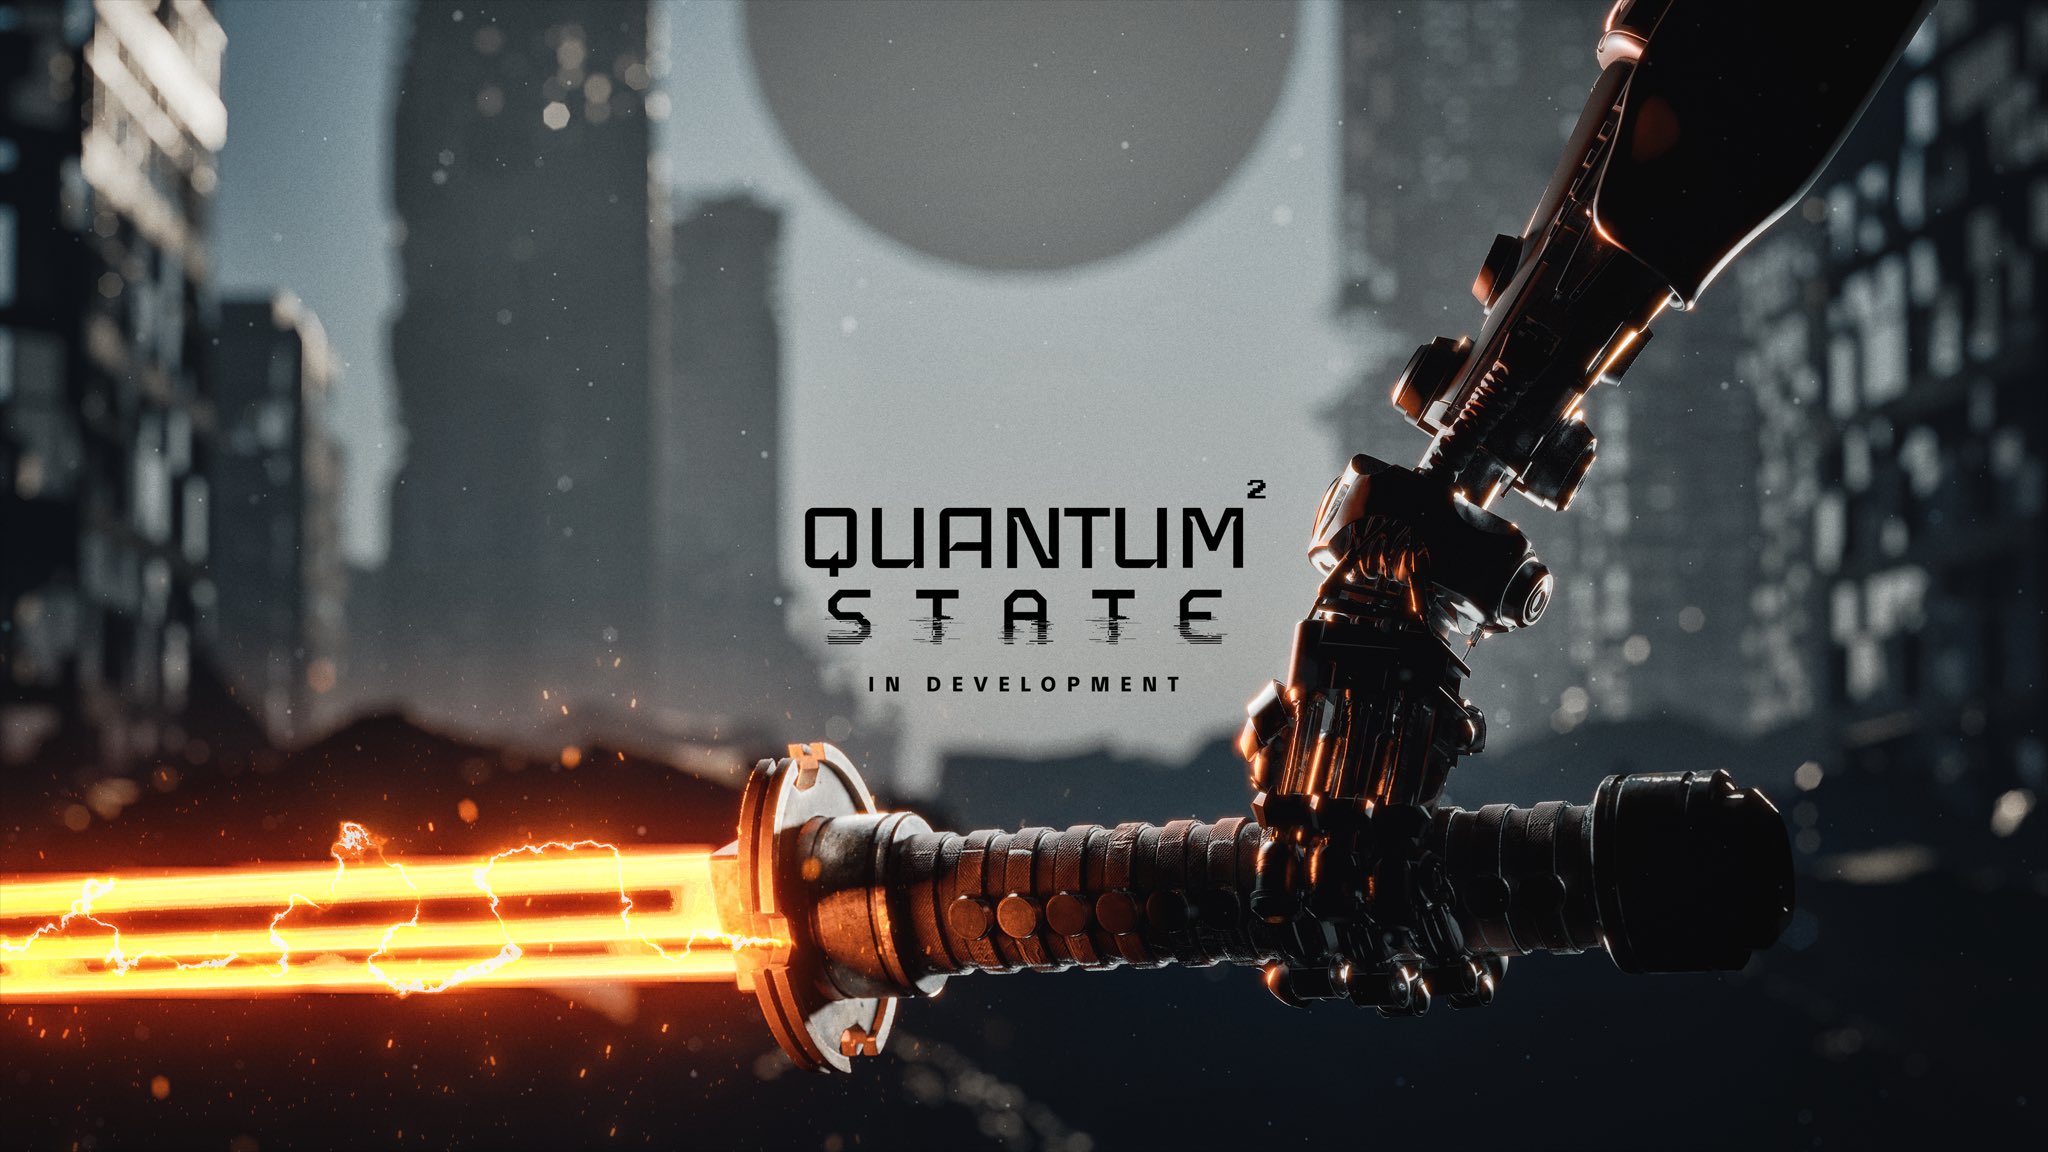 بازی Quantum State به عنوان دنباله کوانتوم ارور معرفی شد